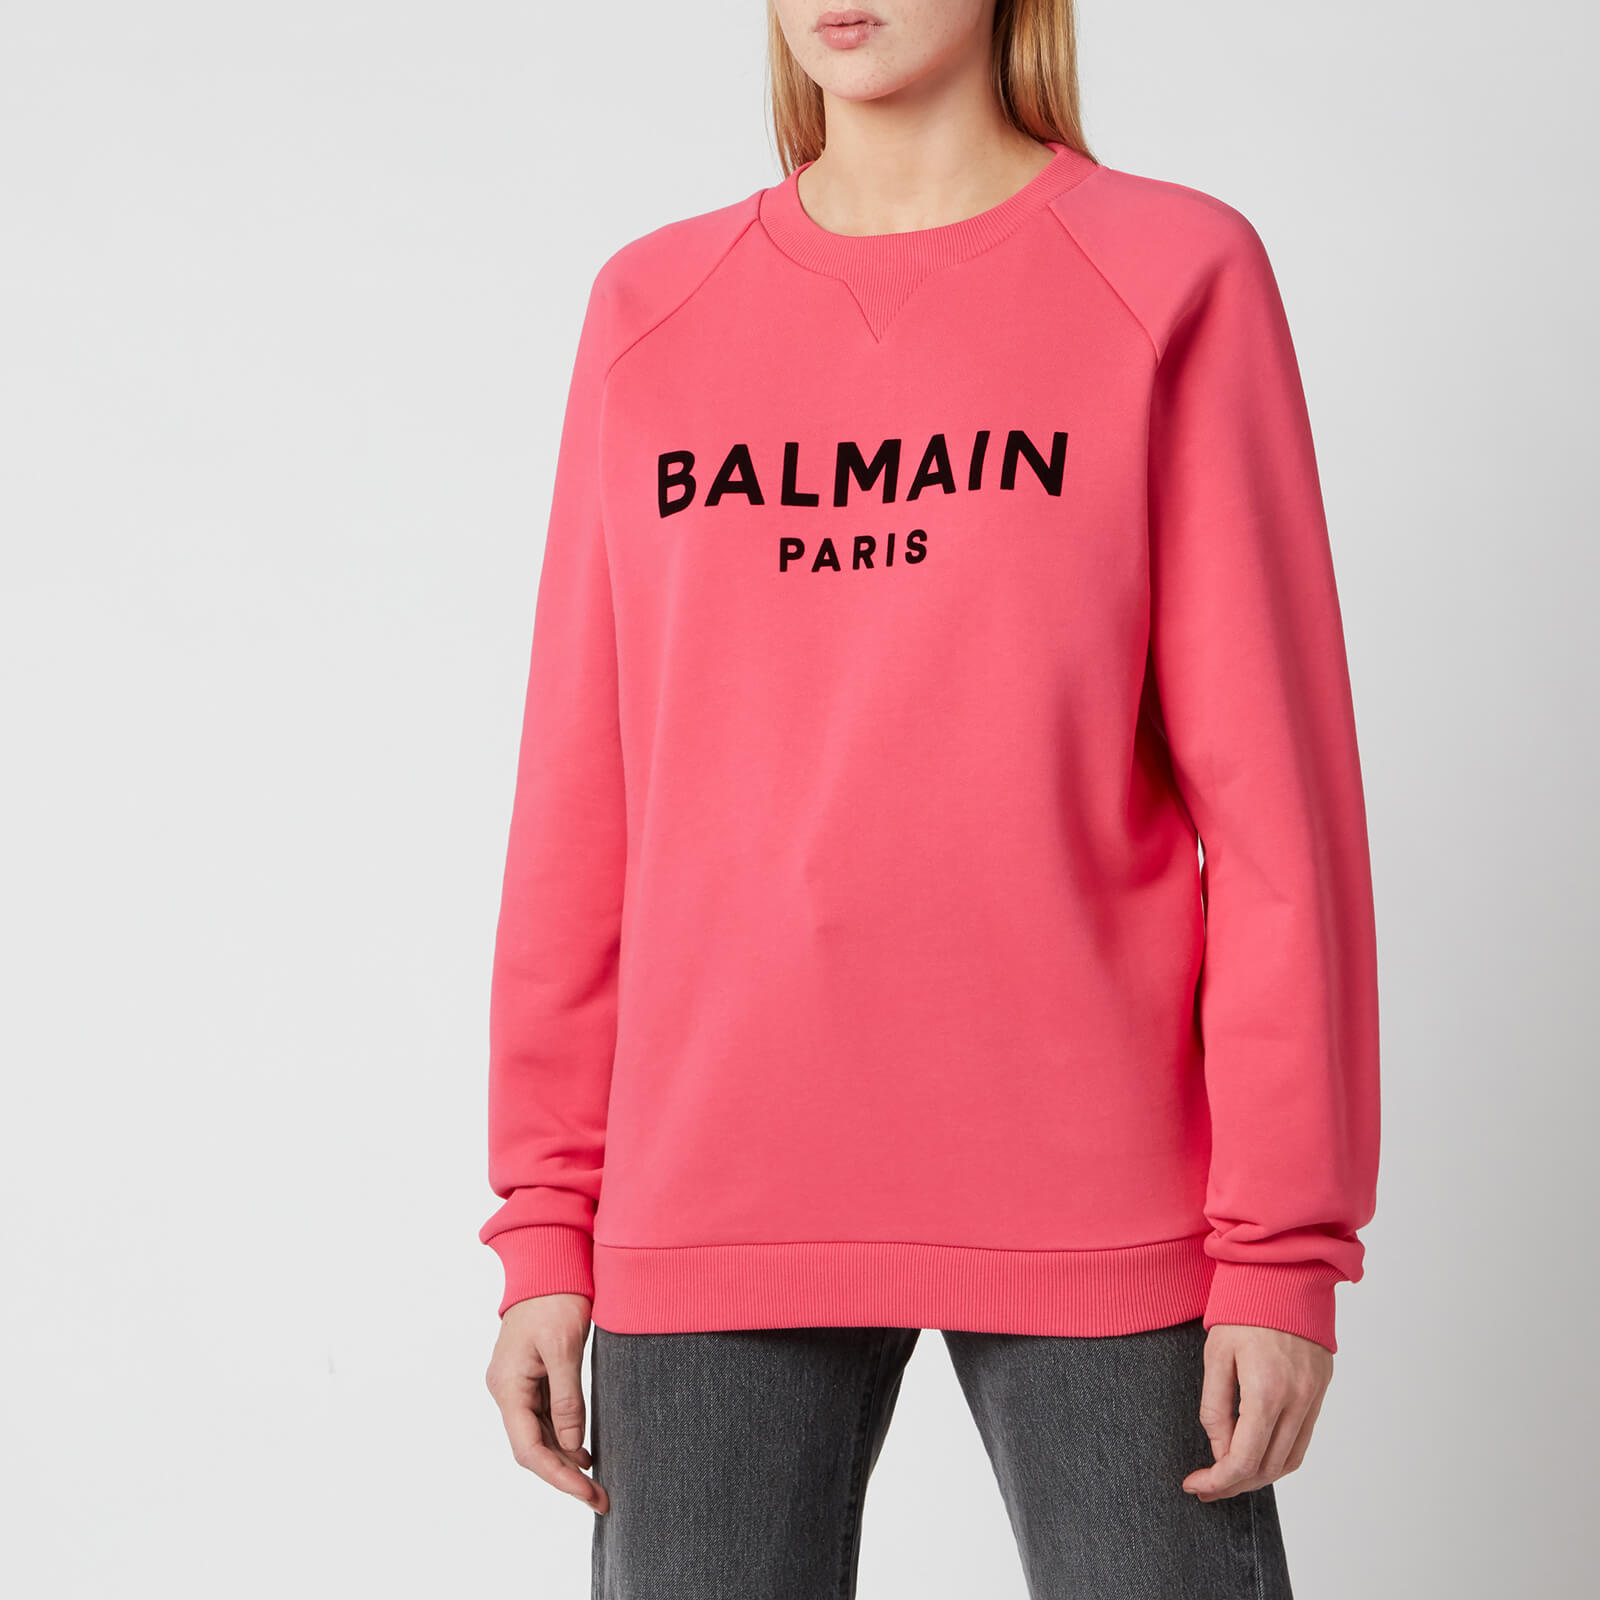 Balmain Women's Flocked Logo Sweatshirt - Fuchcia/Noir - XXS